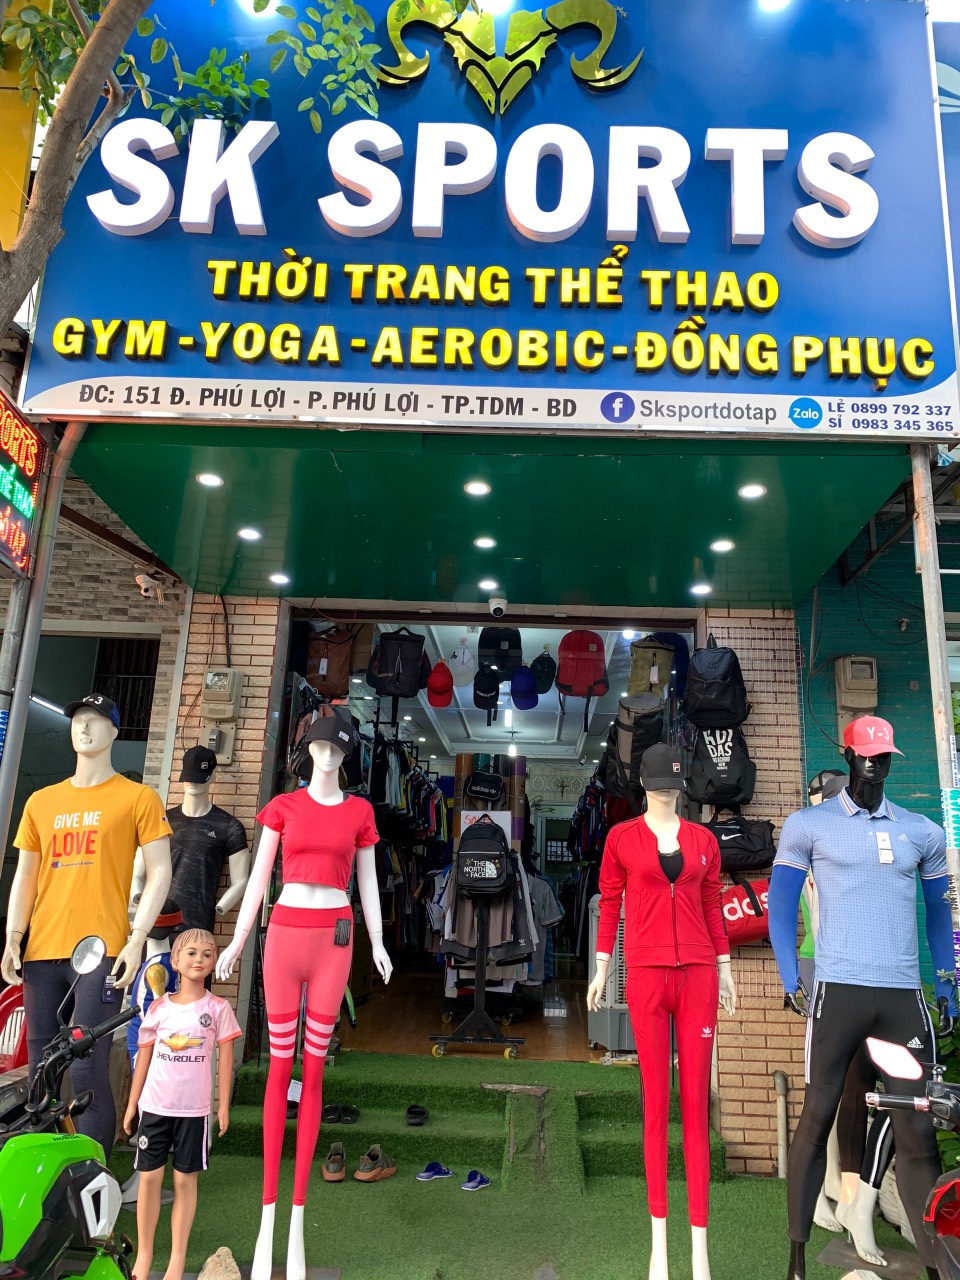 Sksport.vn chi nhánh 1 - chuỗi cửa hàng thời trang thể thao, gym tại Bình Dương